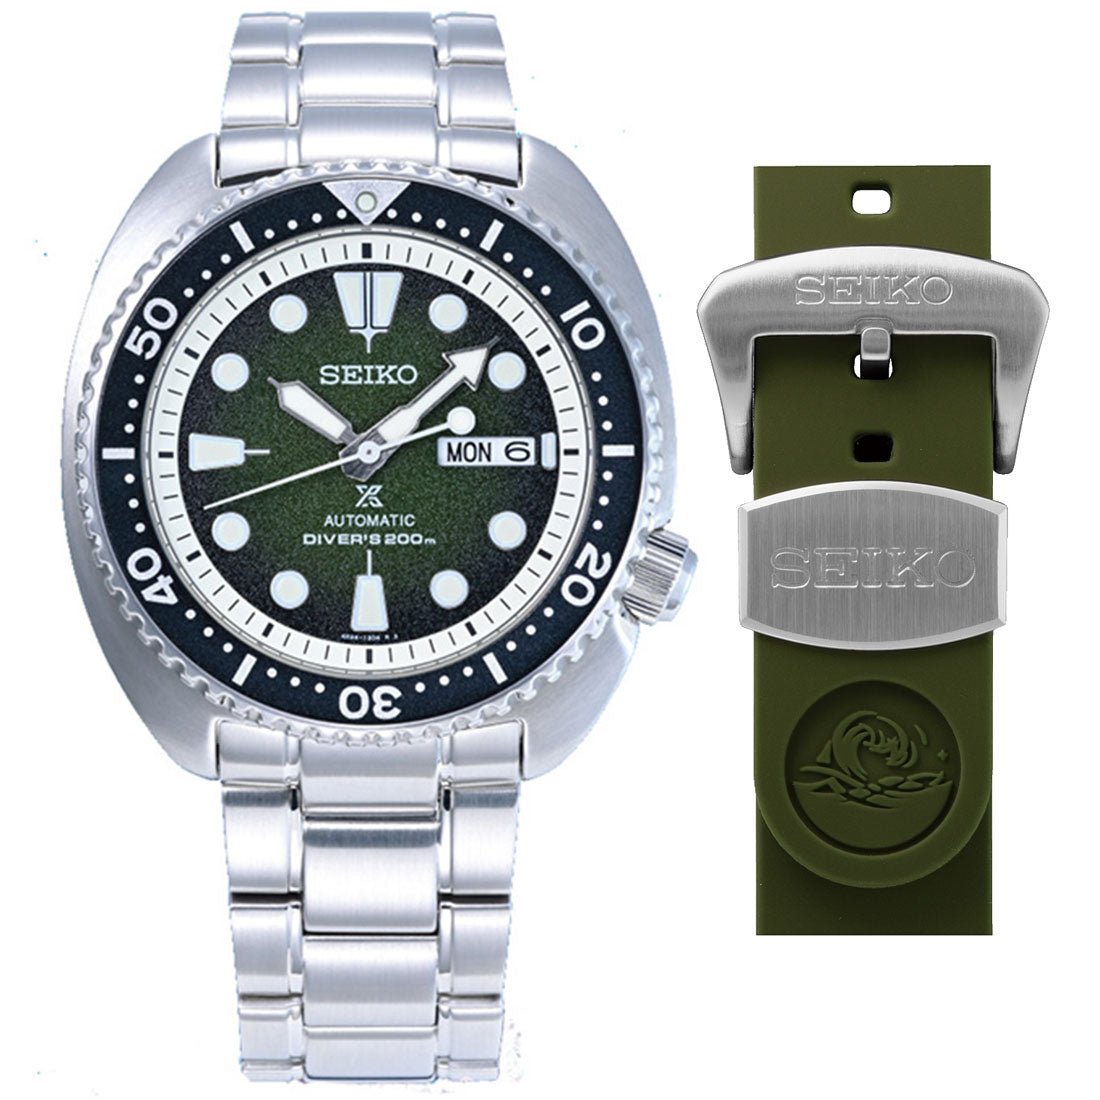 Seiko Sea Urchin Green Prospex SRPJ51K1 SRPJ51 SRPJ51K Limited Edition Diving Watch -Seiko